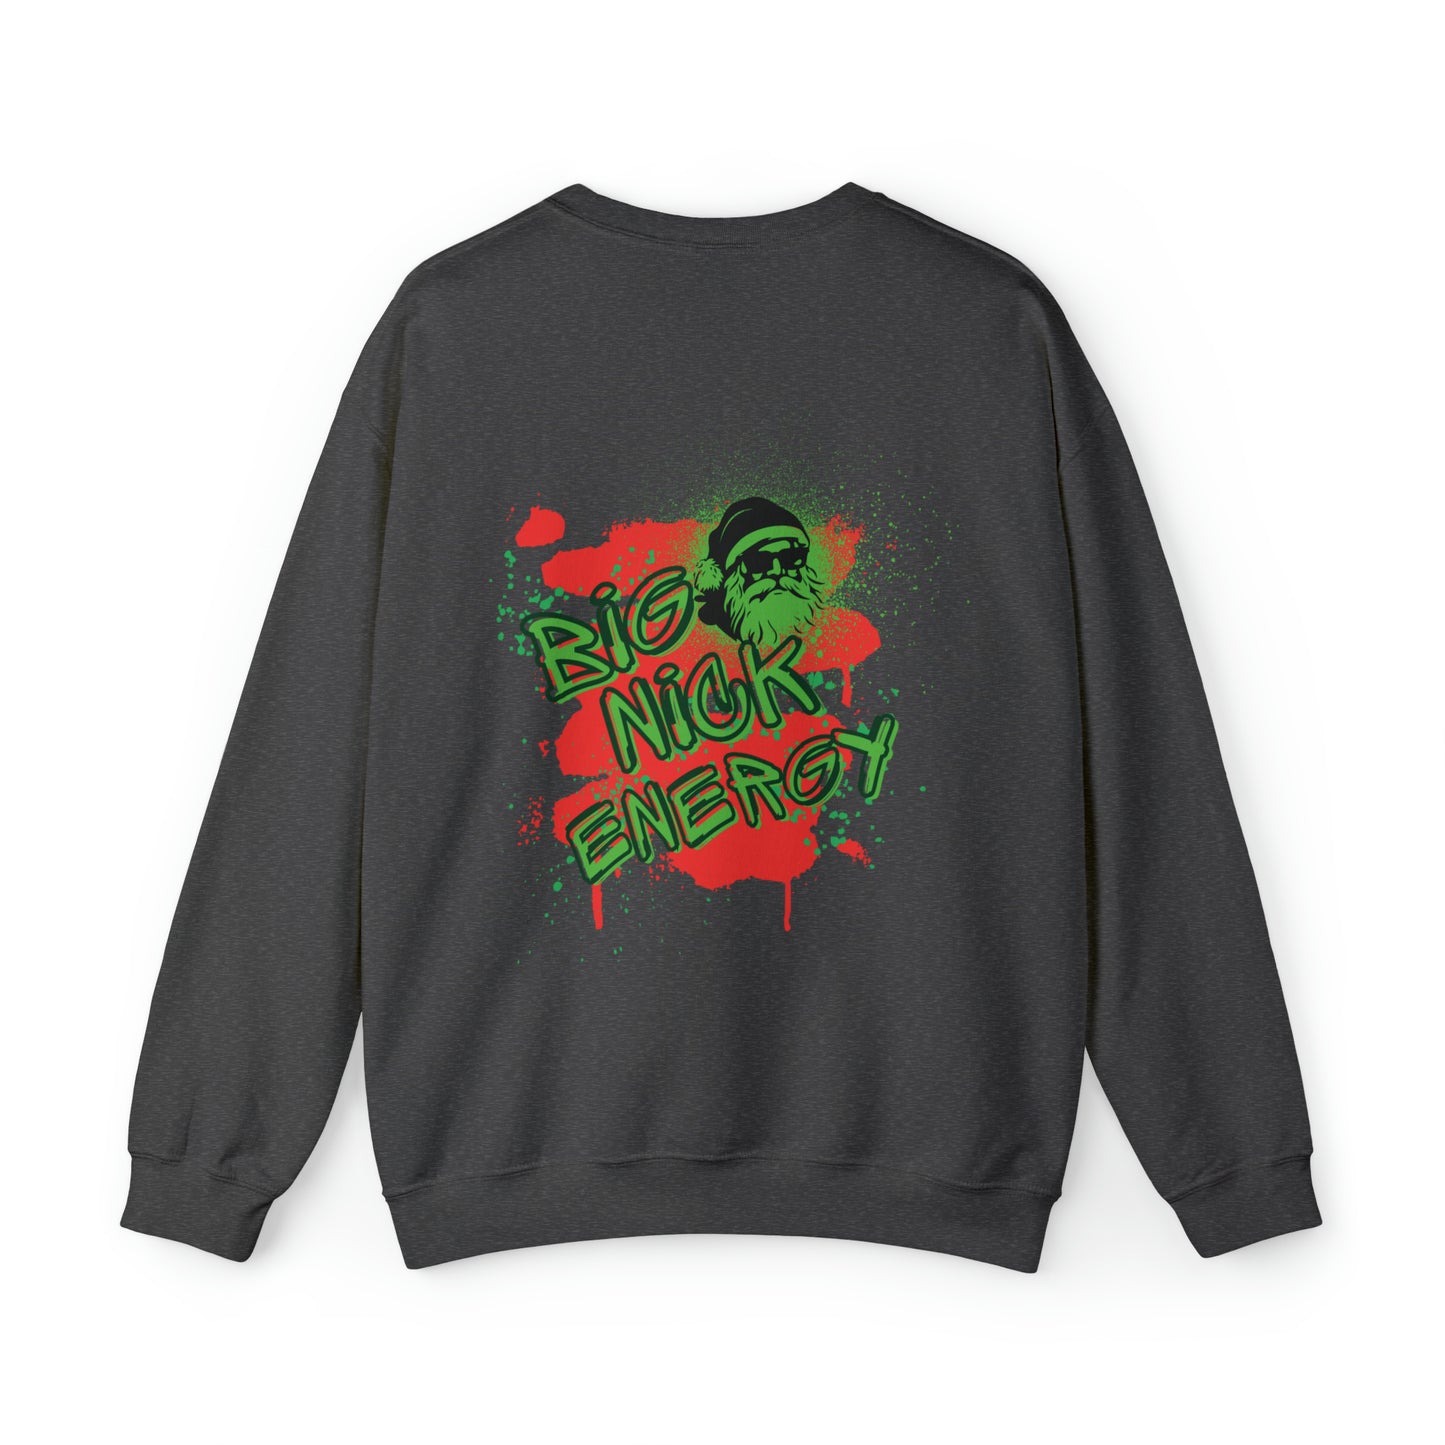 "Big Nick Energy" Christmas Sweatshirt